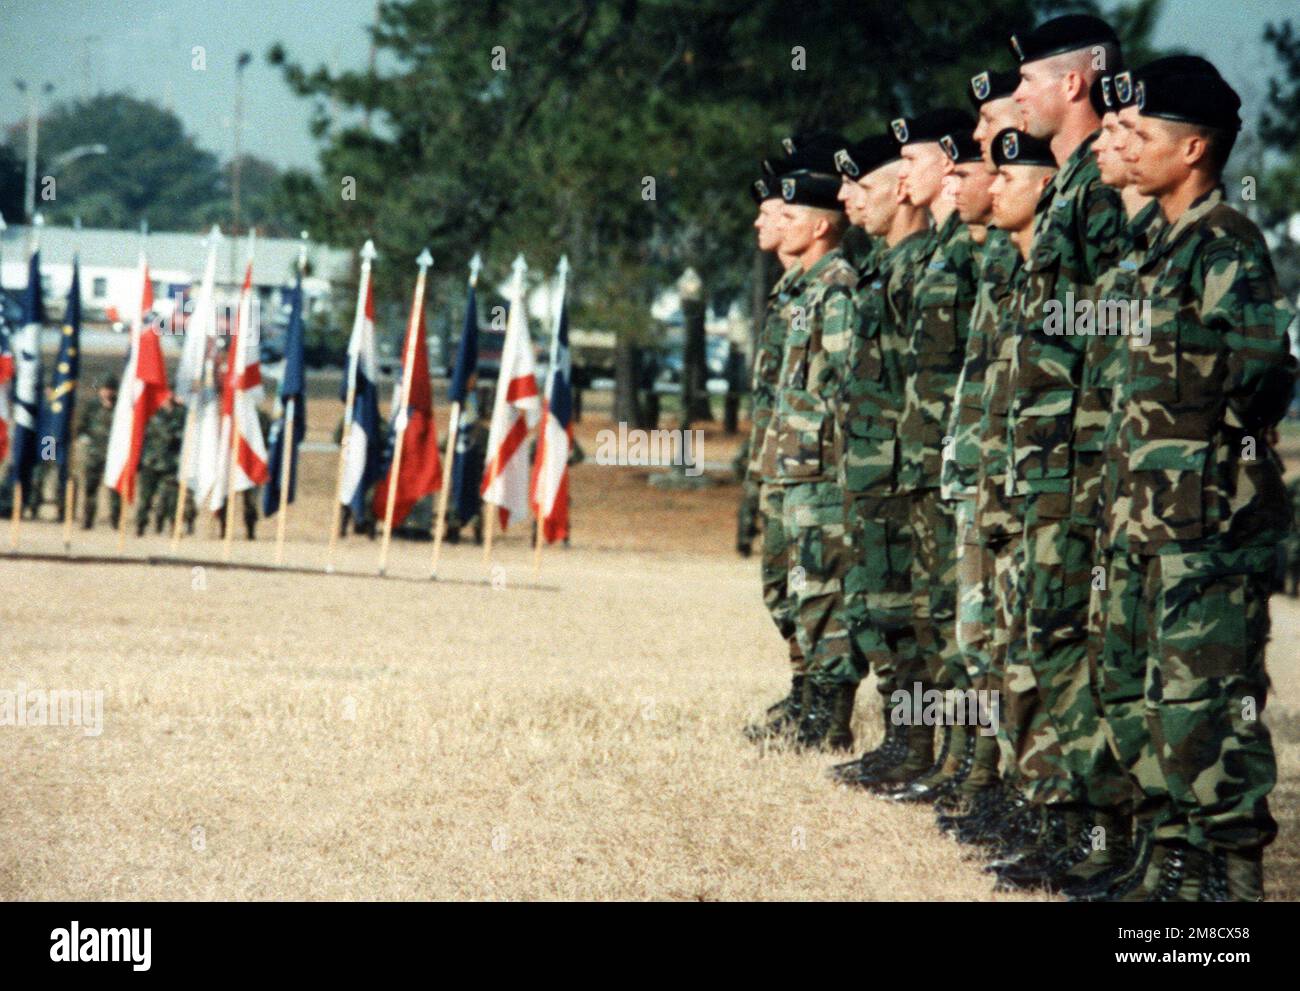 Soldaten des 1. Bataillons, 75. Ranger-Regiment, stehen während einer Zeremonie zur Parade, die die Rückkehr ihres Bataillons aus Panama feierte, wo es zu den Einheiten gehörte, die an der Operation "Just Cause" teilnahmen. Betreff Operation/Serie: JUST CAUSE Base: Fort Stewart Bundesstaat: Georgia (GA) Land: Vereinigte Staaten von Amerika (USA) Stockfoto